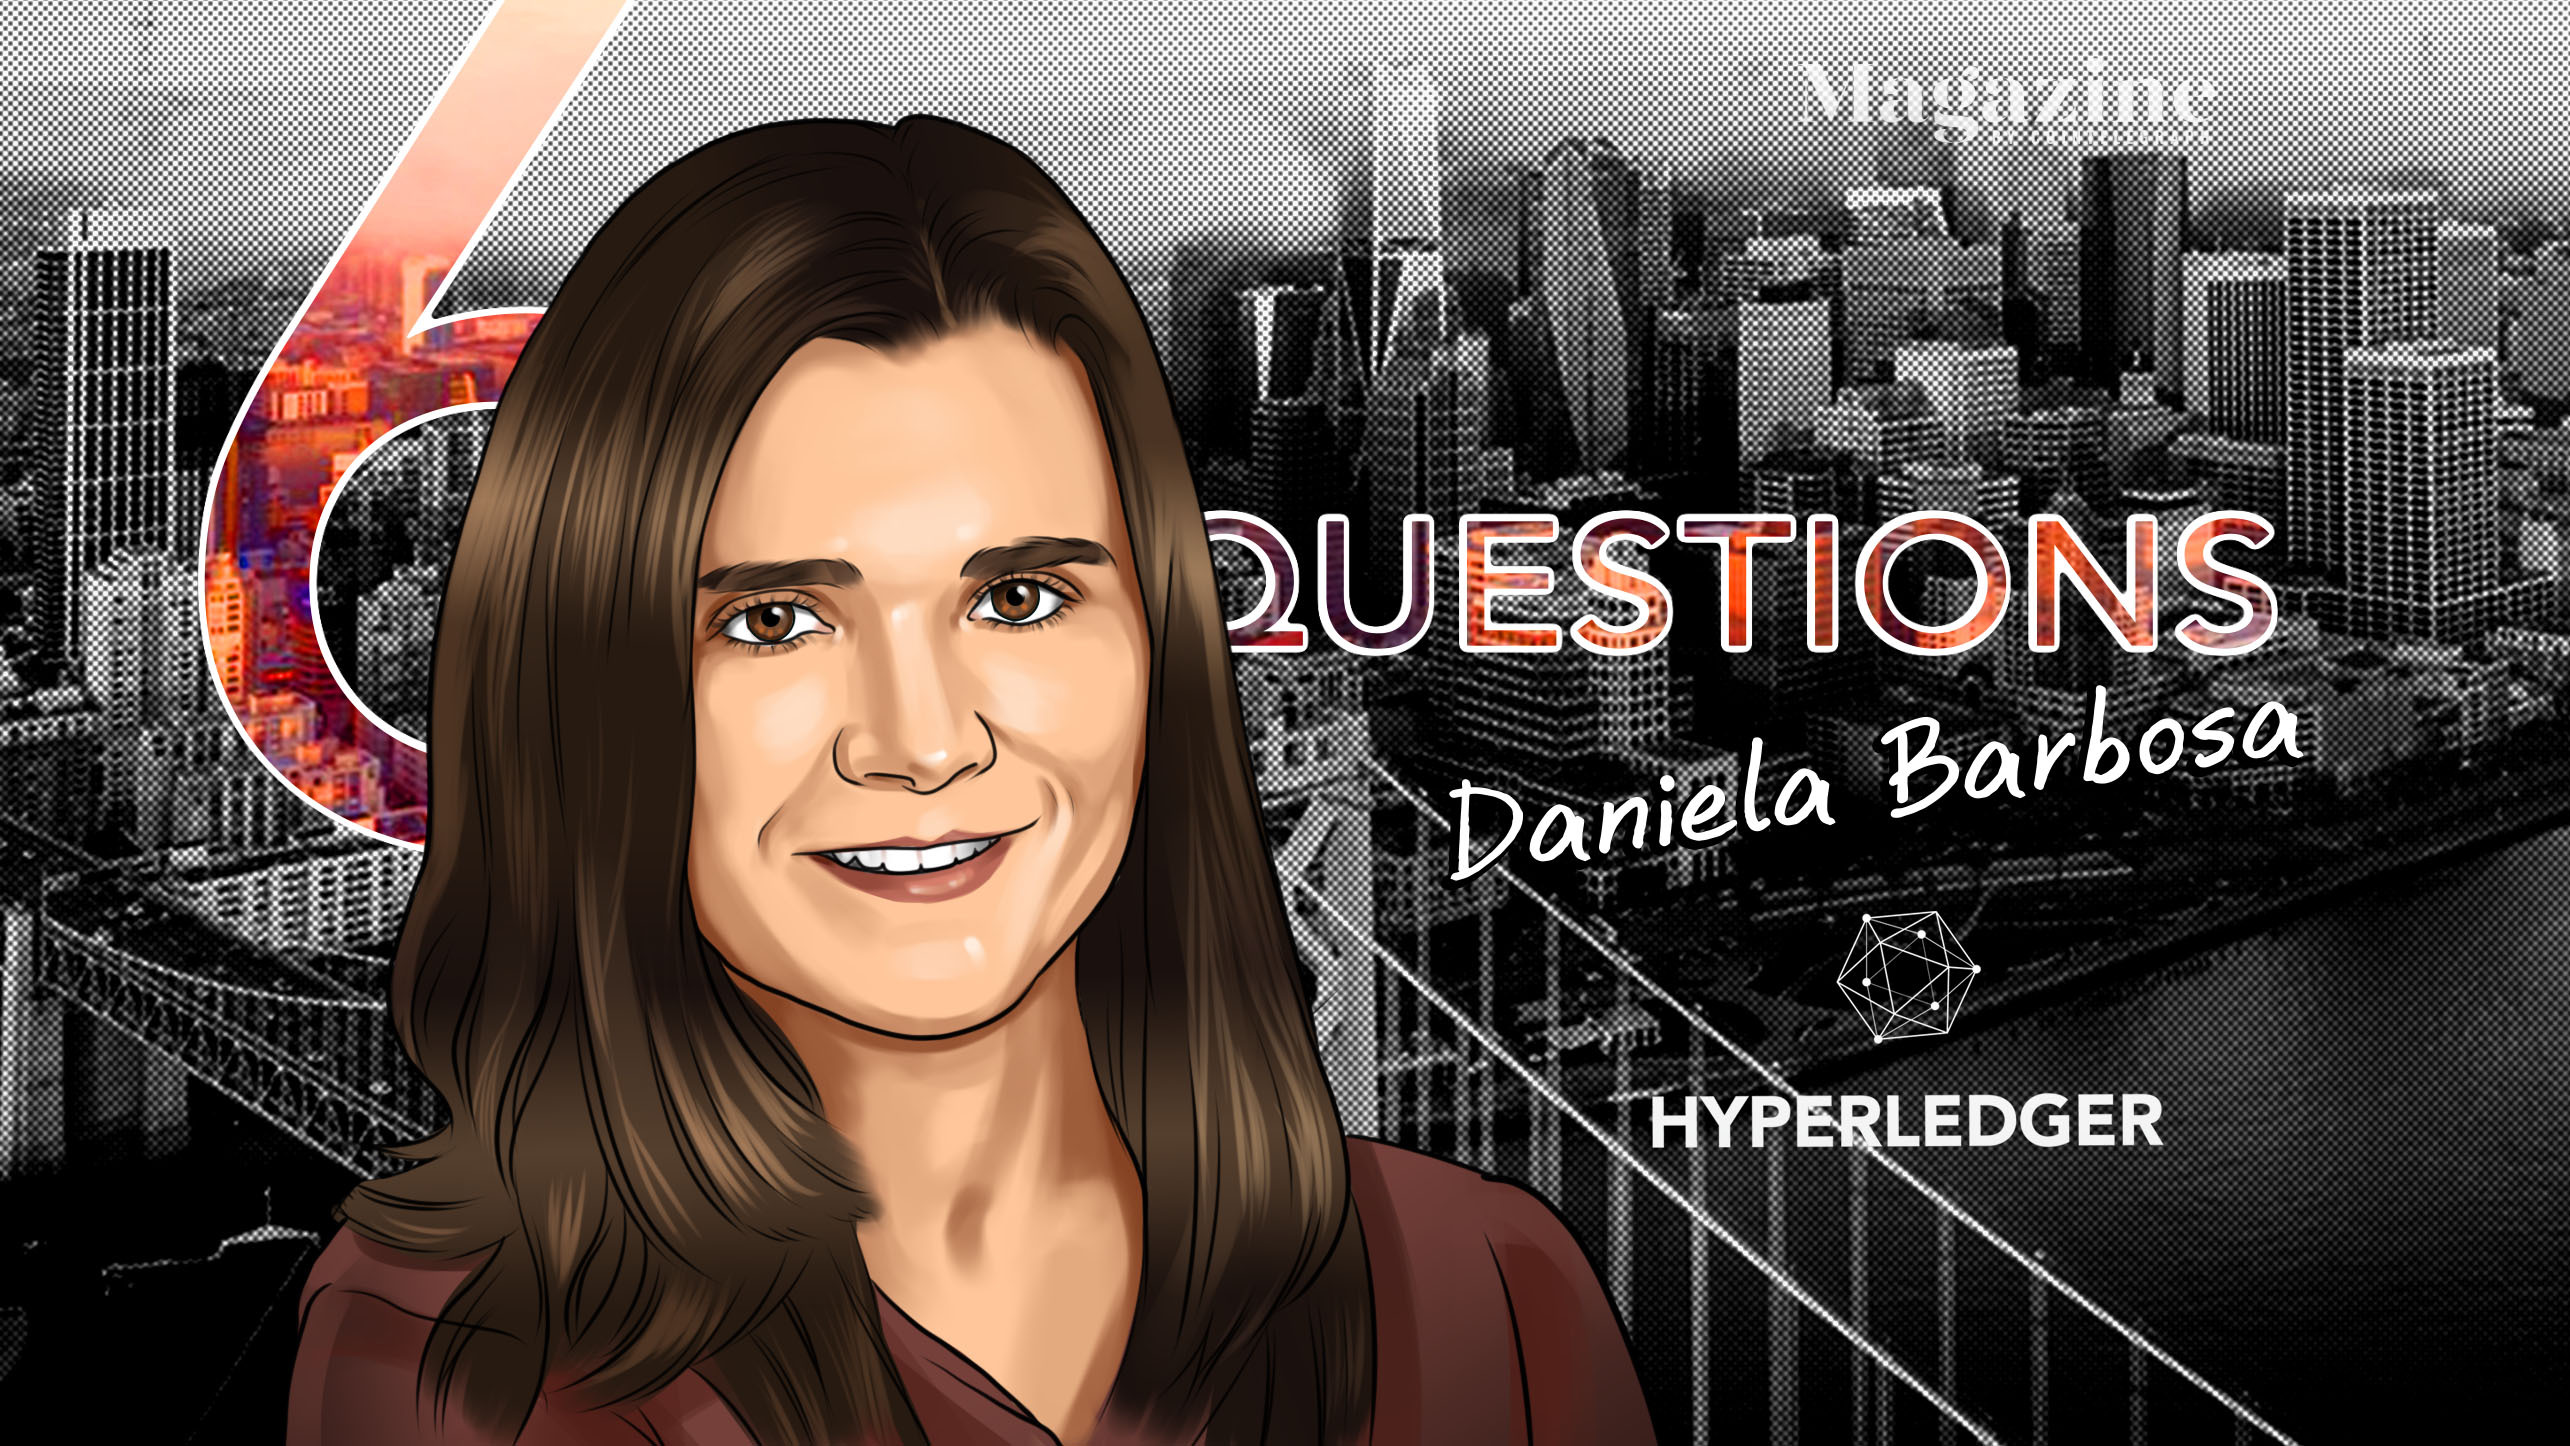 6 câu hỏi cho Daniela Barbosa của Hyperledger - Tạp chí Cointelegraph 7